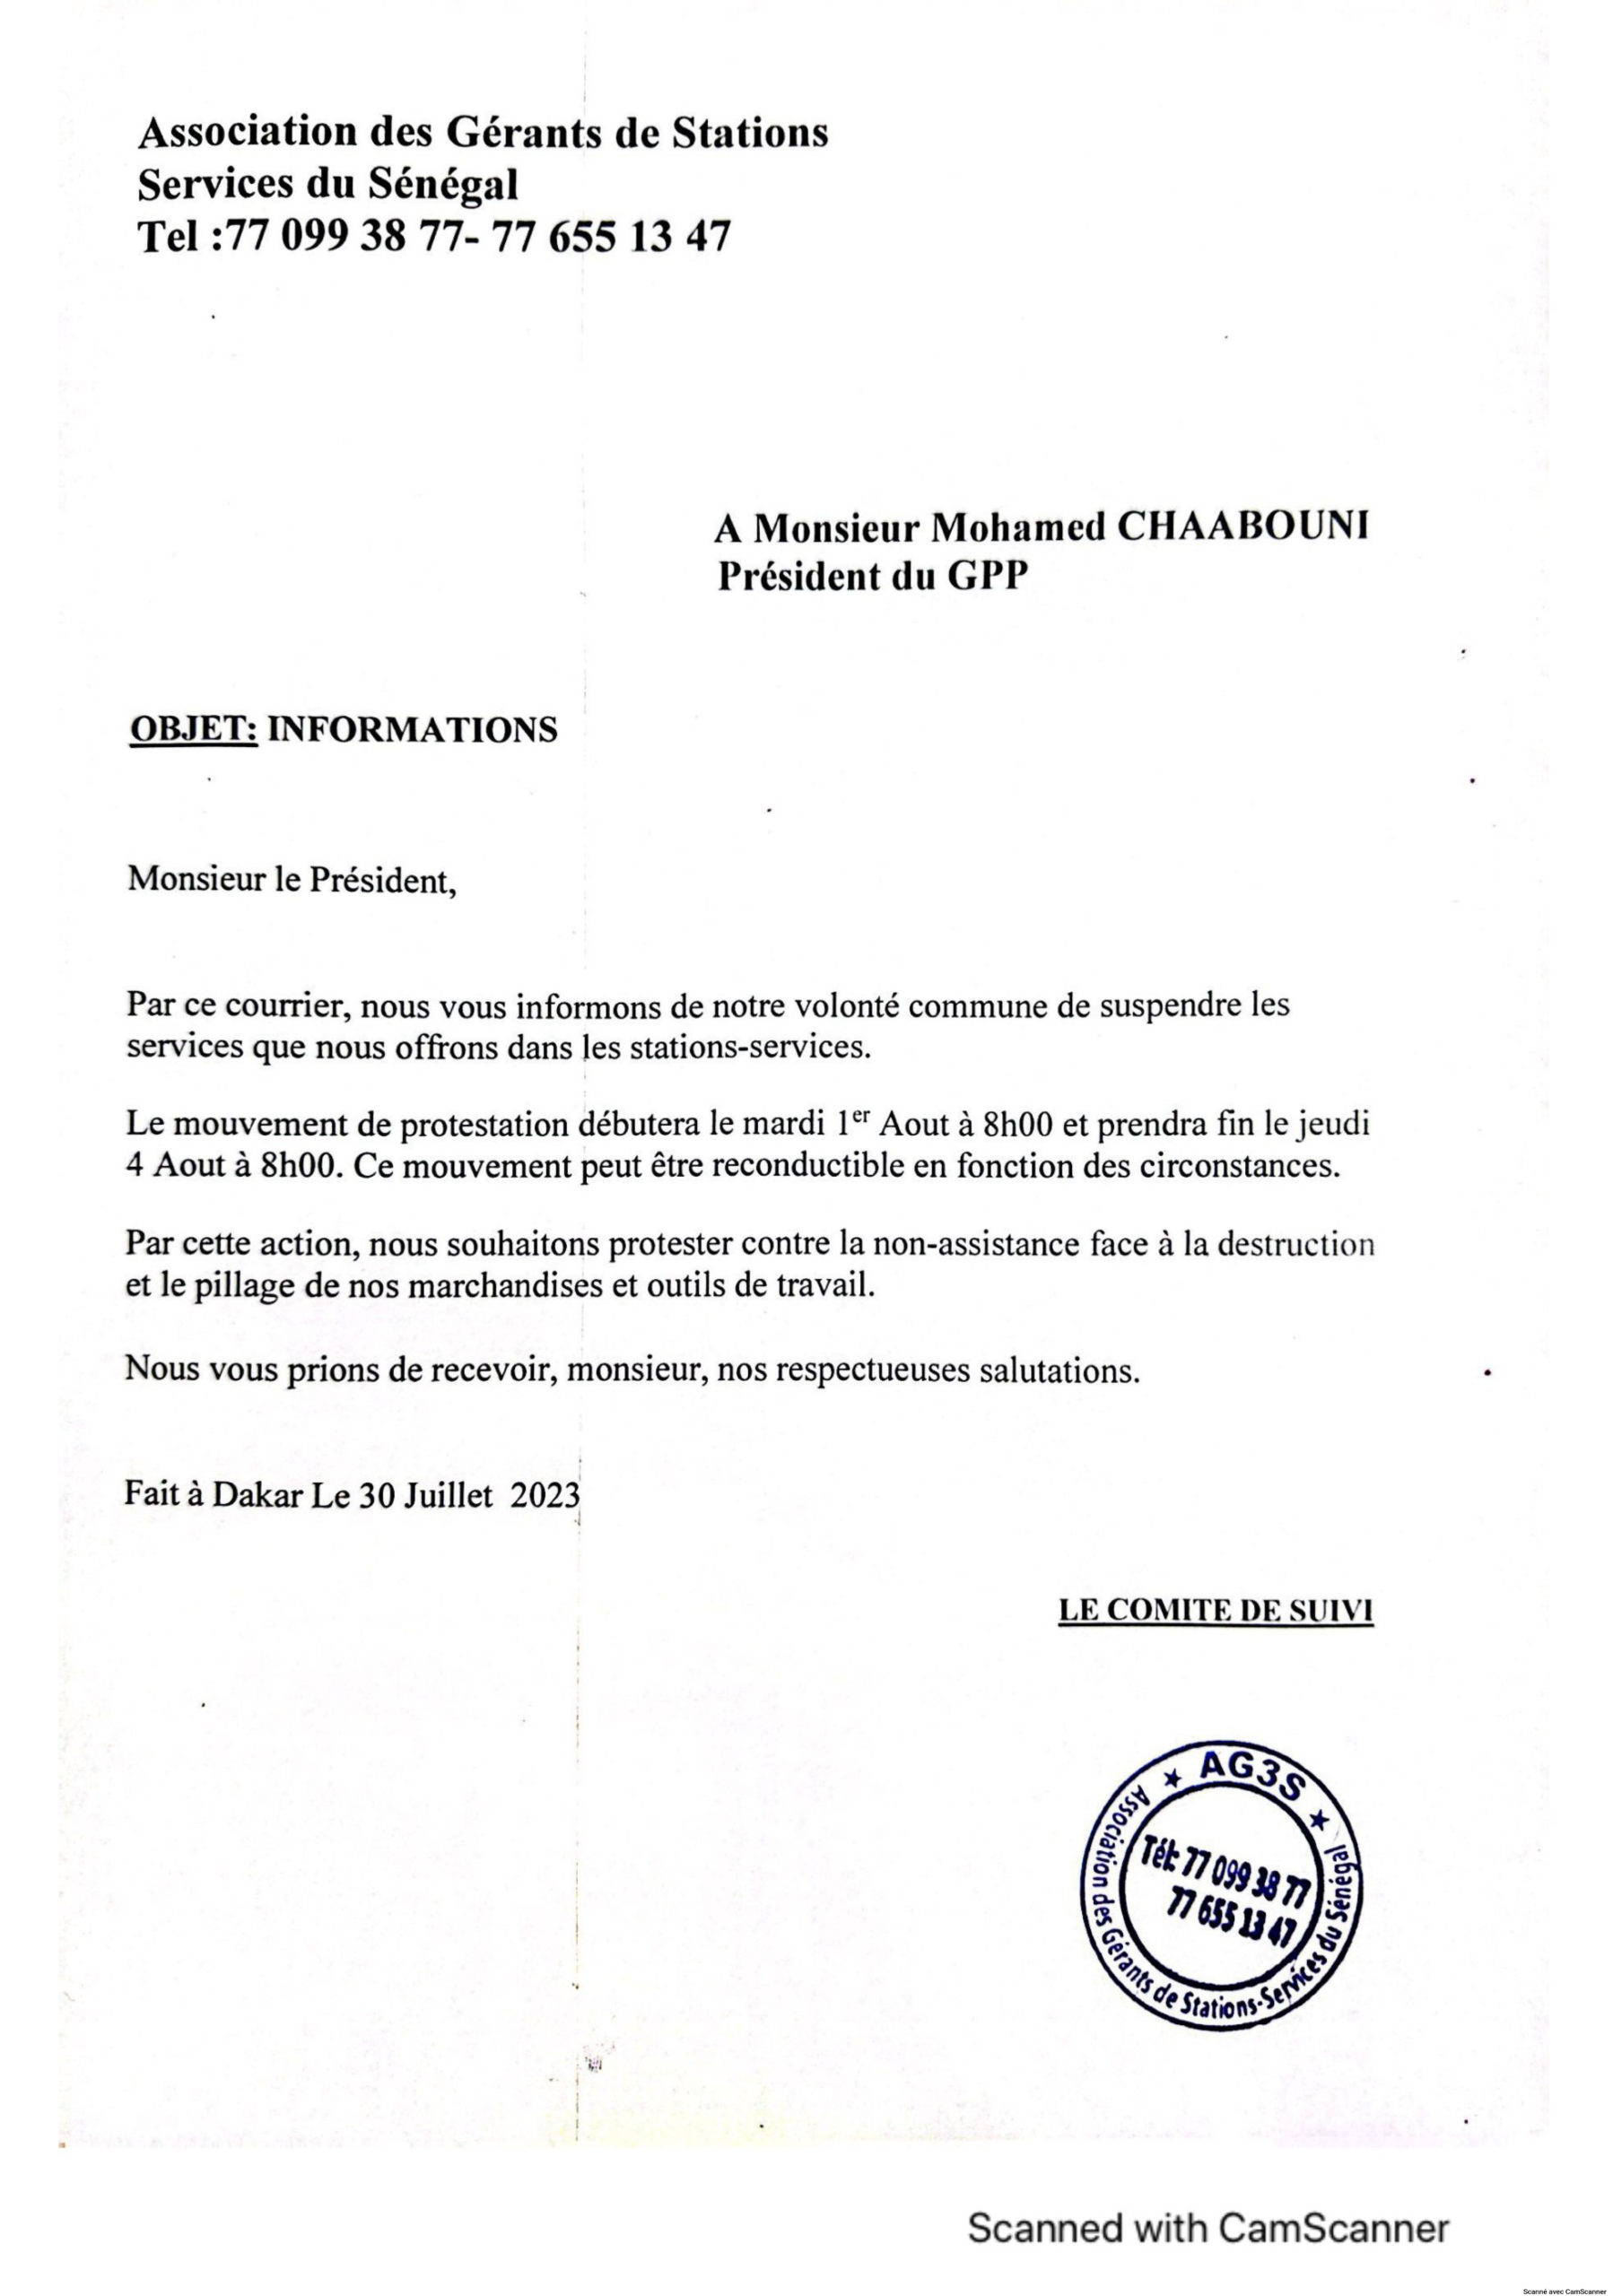 Vente de carburant : Les gérants de stations-services du Sénégal, décrètent 72 heures de grève à partir de demain